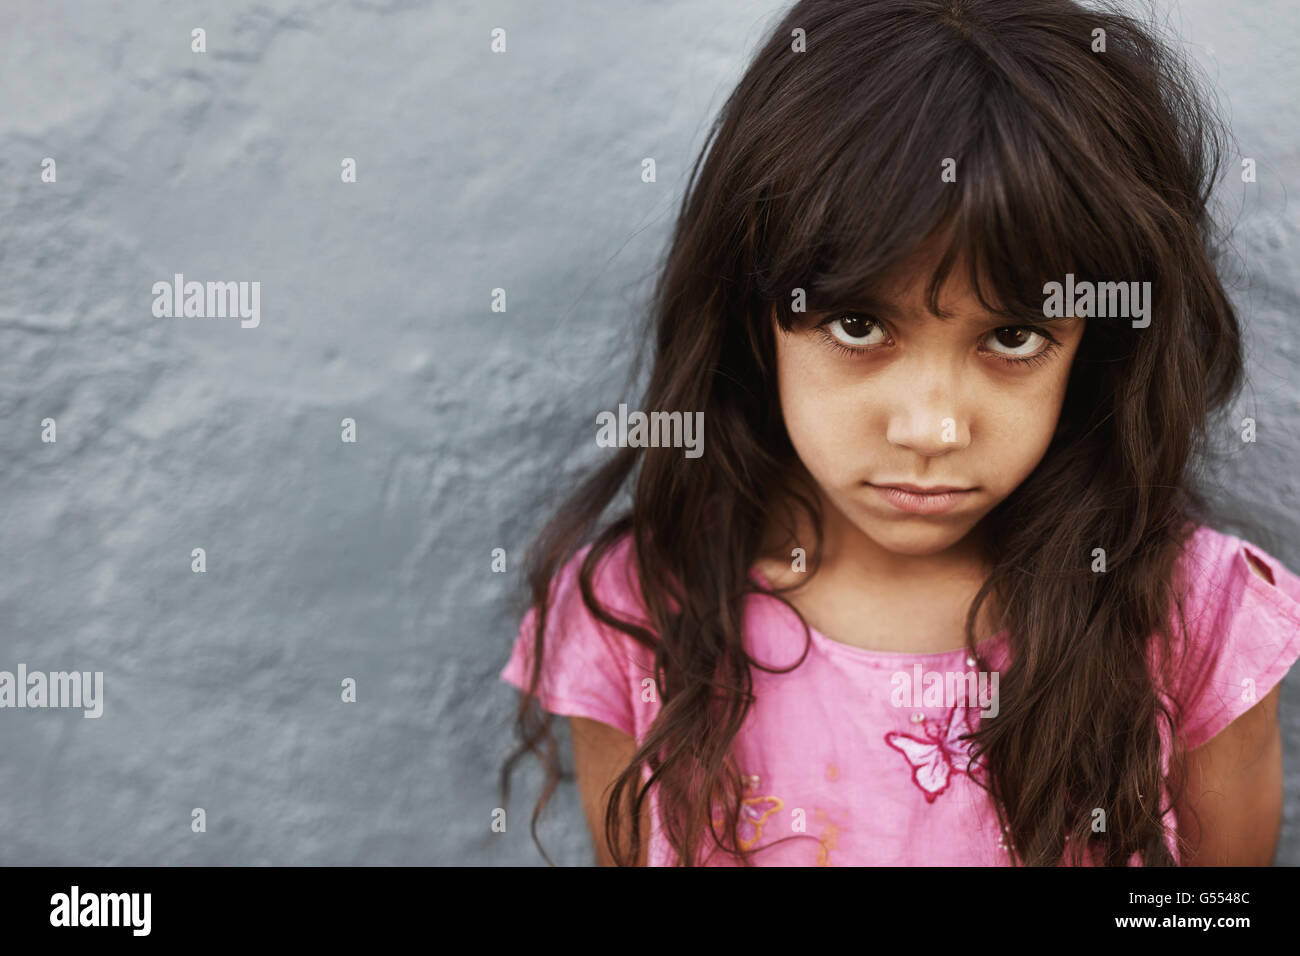 Porträt von preteen Mädchen mit schweren Ausdruck stehen vor grauem Hintergrund hautnah. Weibliches Kind in die Kamera starrt. Stockfoto